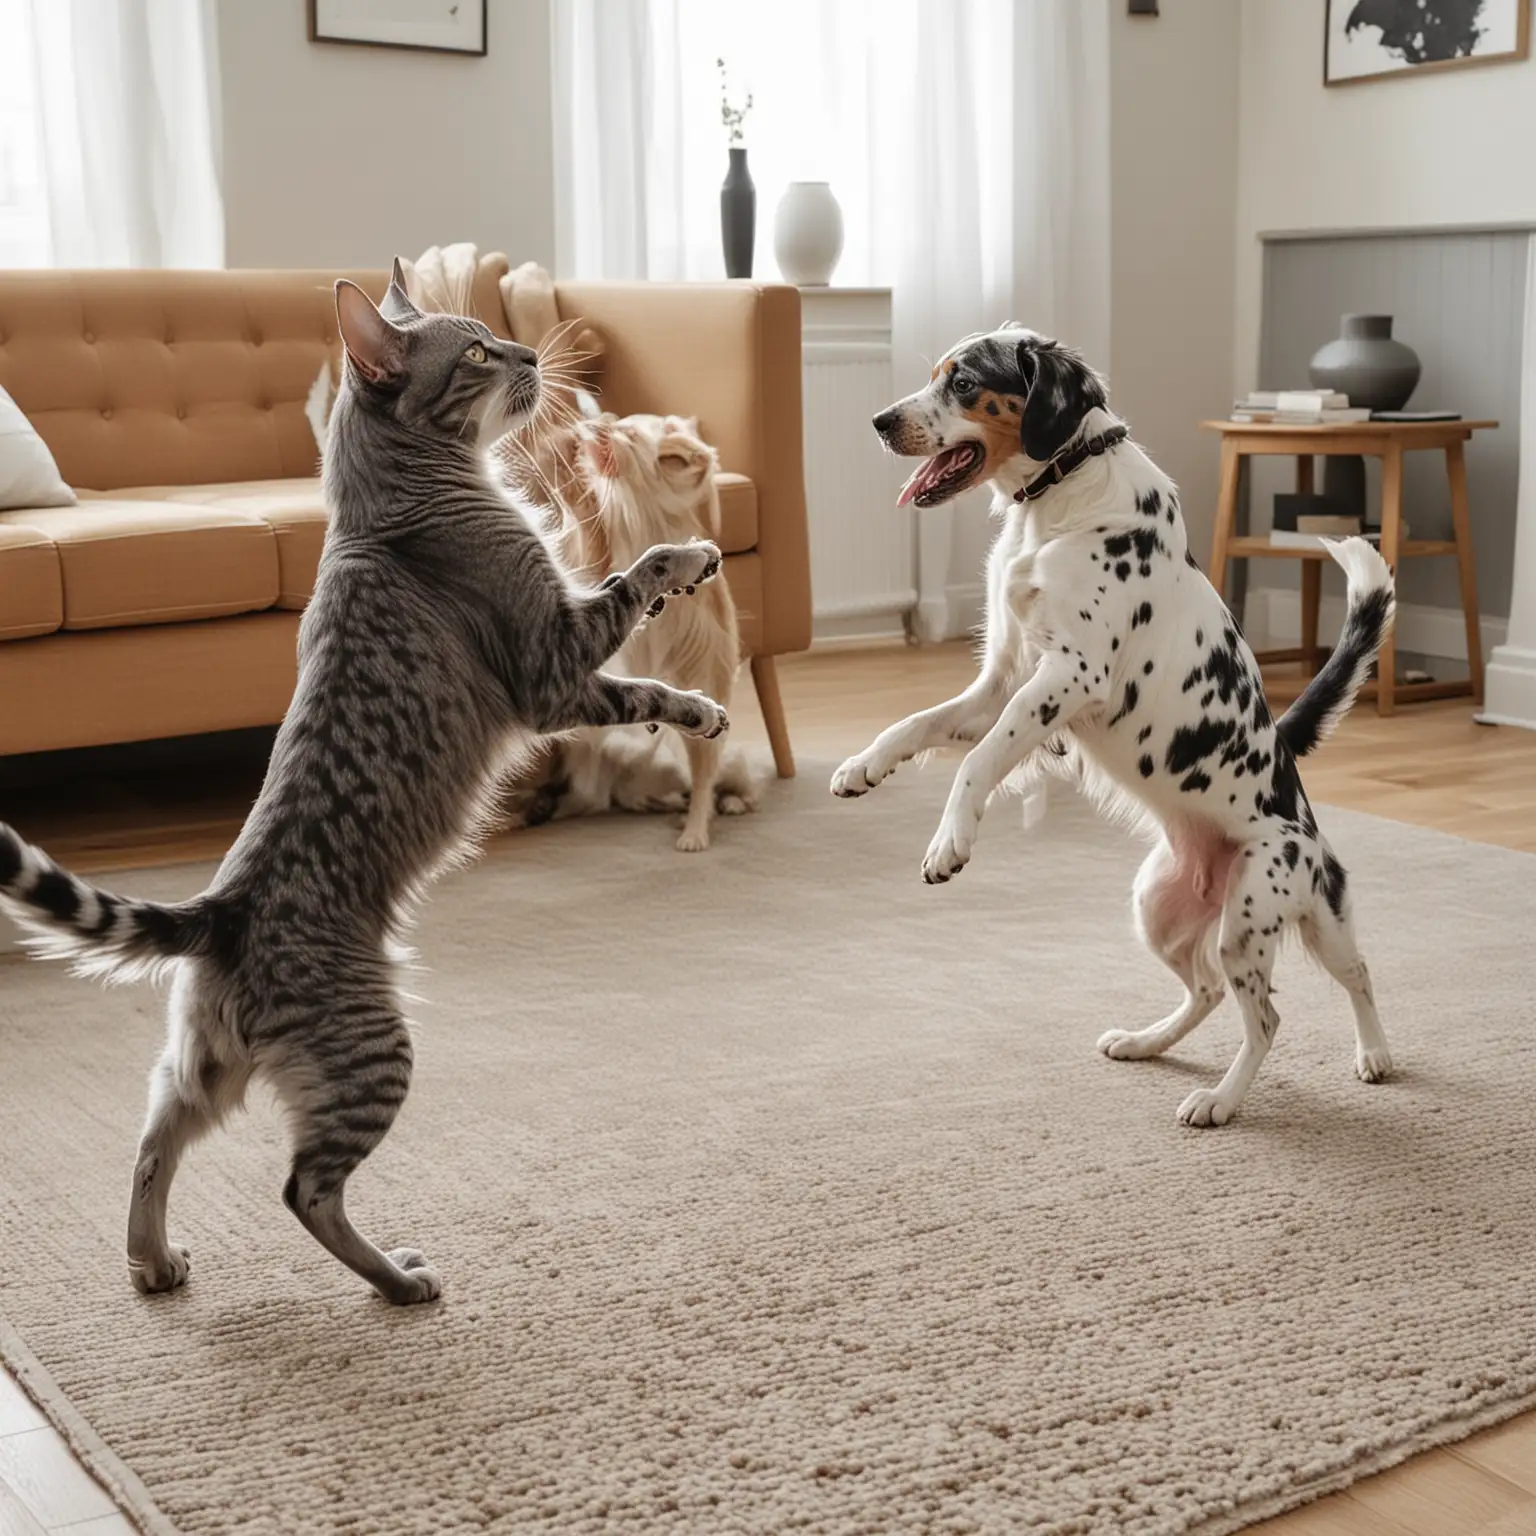 Intense Grey Cat vs Brown Setter Dog Battle in a Vibrant Living Room Scene